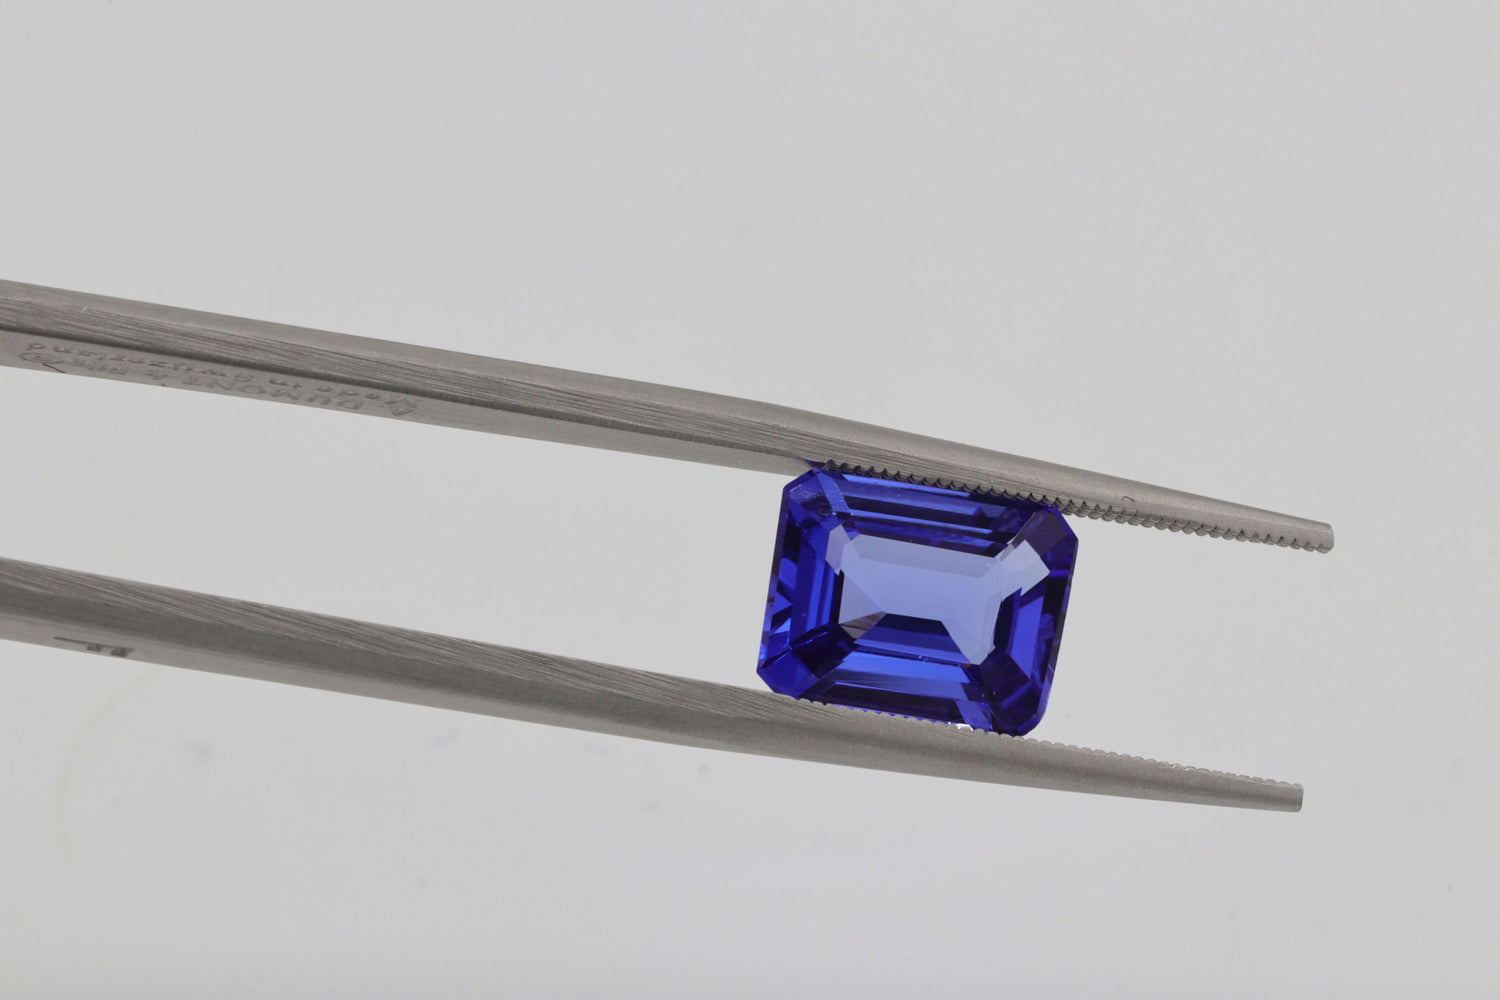 Blue sapphire gem on a tweezer